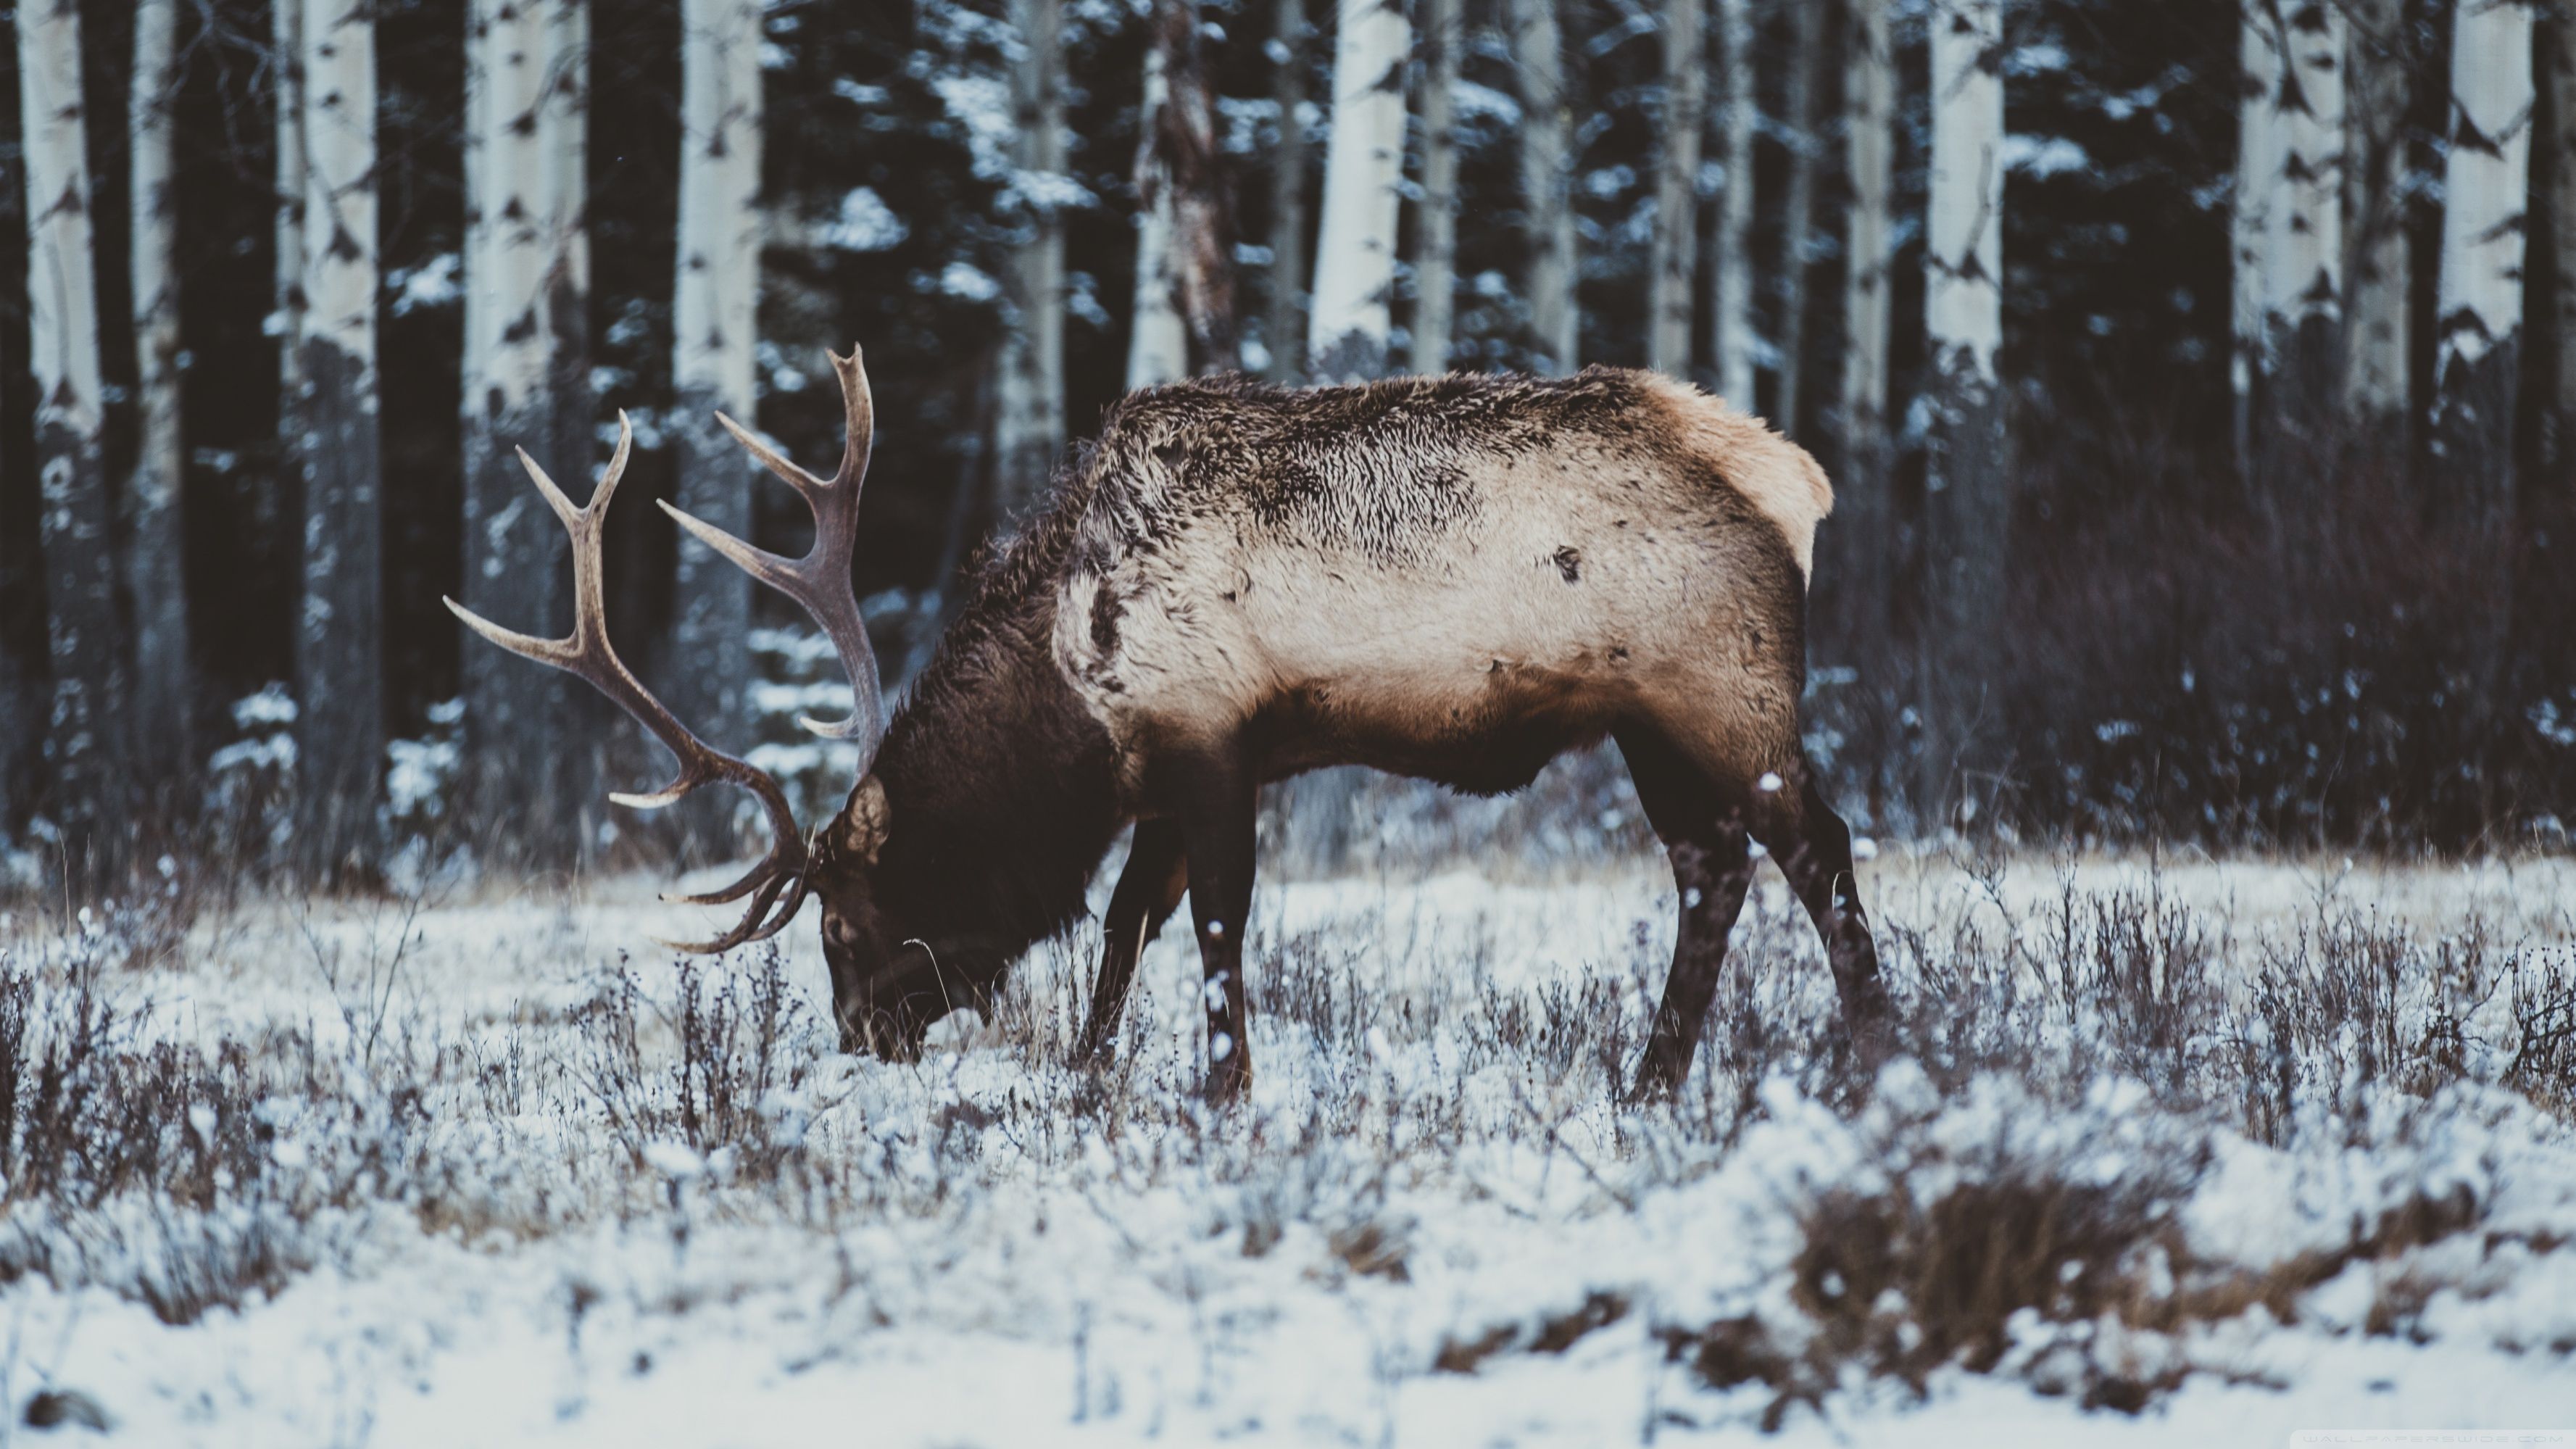 Elk in Snow, Winter Ultra HD Desktop Background Wallpaper for 4K